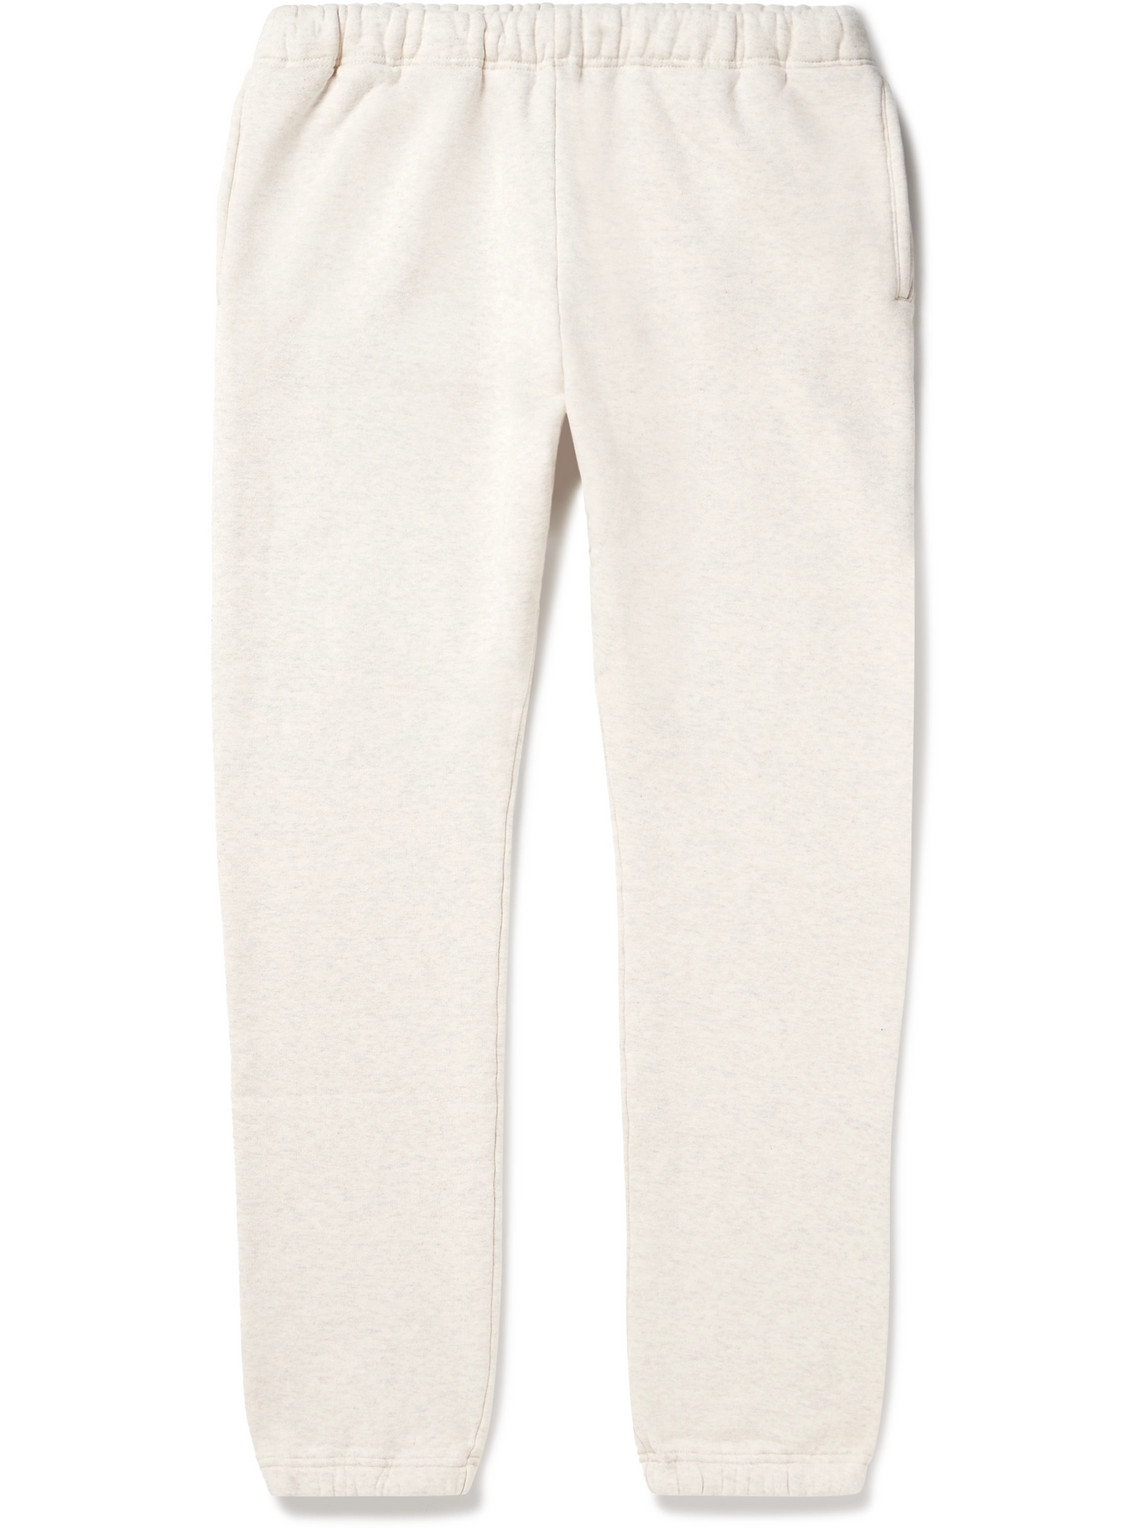 Beams Plus - Tapered Cotton-Jersey Sweatpants - Men - Neutrals - L von Beams Plus